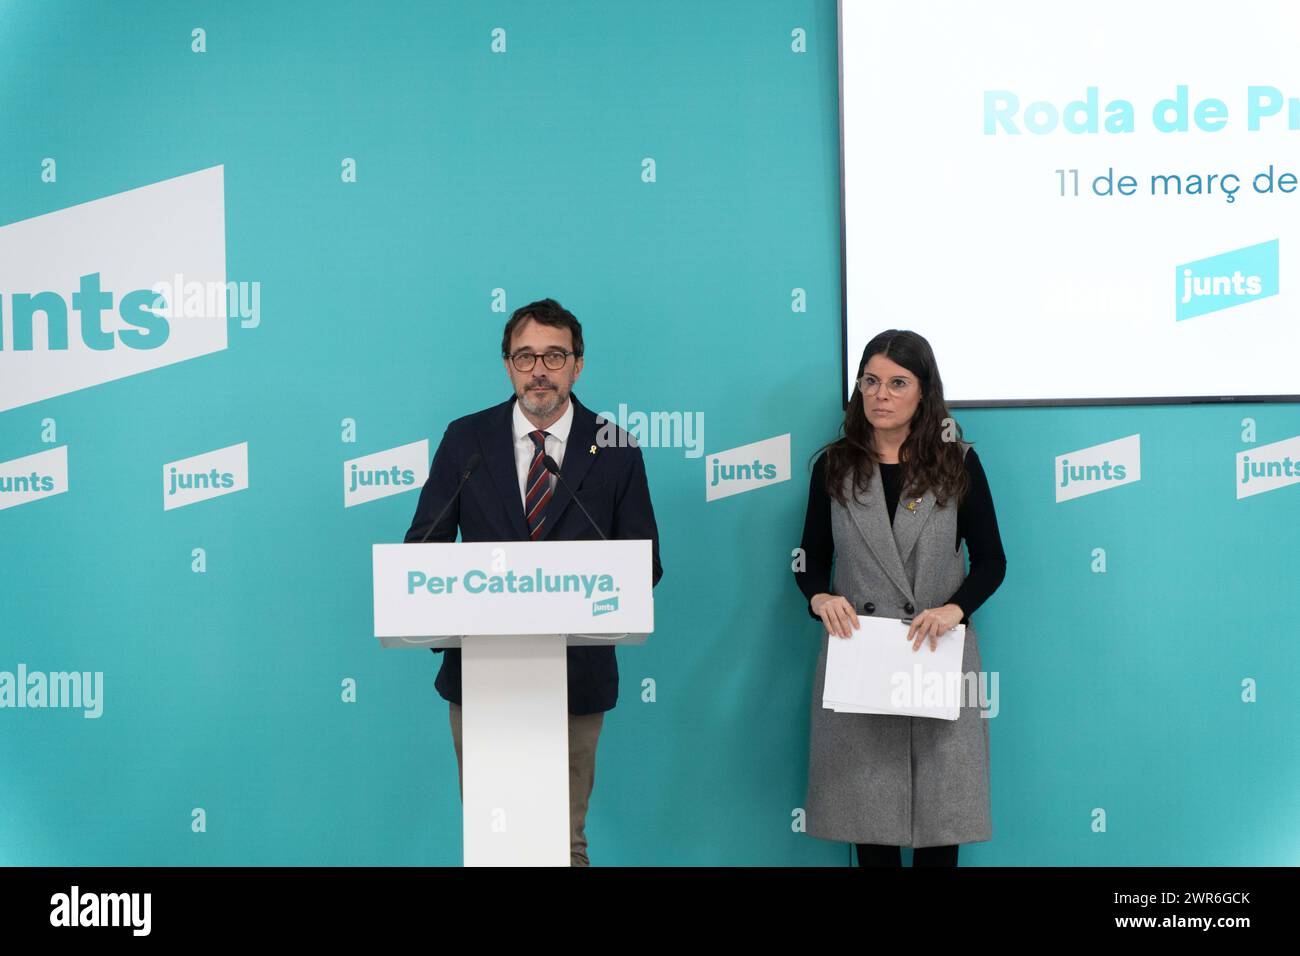 Pressekonferenz der politischen Partei "Junts", auf der sie die in der vergangenen Woche mit der spanischen Regierung erzielte Amnestievereinbarung positiv bewertet haben, obwohl sie betont haben, dass dies nicht bedeutet, dass es sich um eine Regierungsvereinbarung mit der spanischen Regierung handelt. Andererseits haben sie angekündigt, dass die "Junts" eine vollständige Änderung der Haushaltspläne der Generalitat vorgelegt haben. über die am Mittwoch im katalanischen parlament abgestimmt wird, wobei die wenigen Treffen mit der Regierung von Pere Aragones und die Ablehnung des Vorschlags zur Reduzierung von inh kritisiert werden Stockfoto